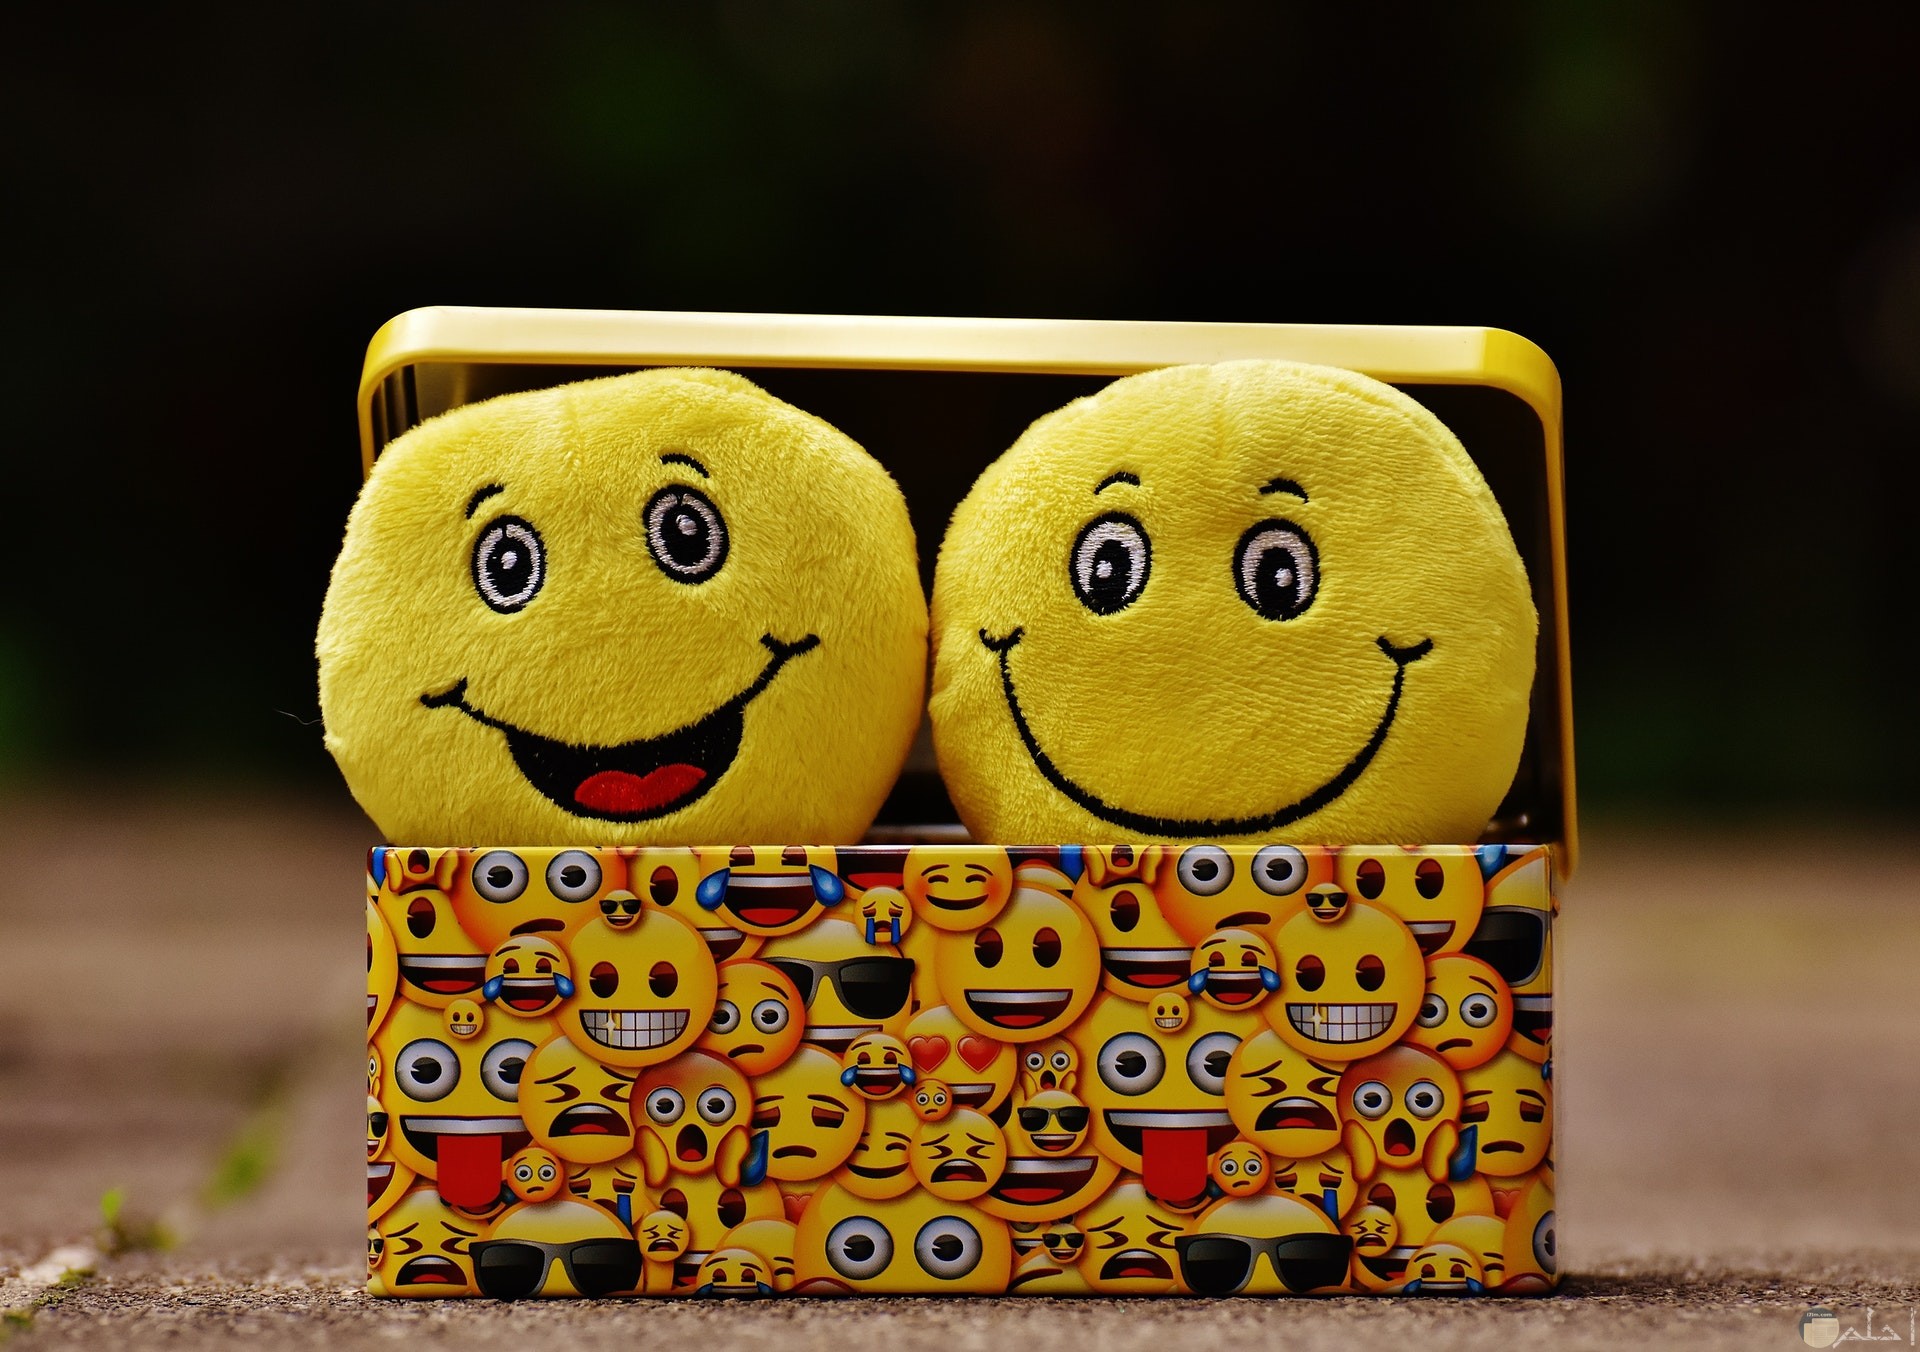 صورة جميلة لمجموعة الإيموجي المختلفة مجتمعة معا علي الصندوق وداخل الصندوق إتنين إيموجي مبتسم وضاحك